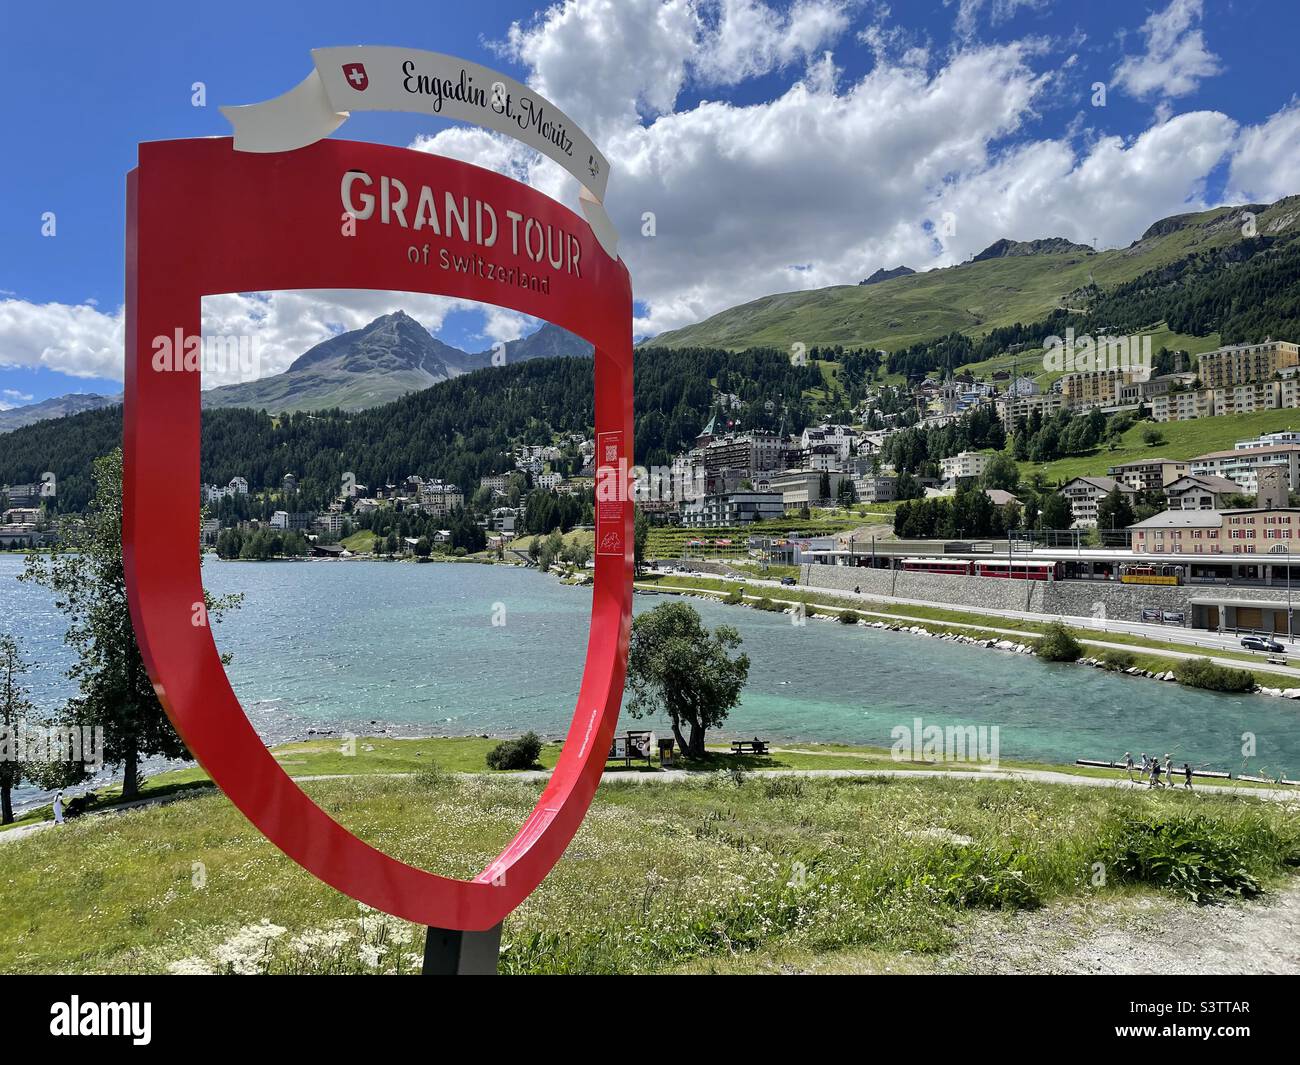 Ort und See Sankt Moritz mit Grand Tour Tourismusschild, Engadin, Schweiz Stockfoto